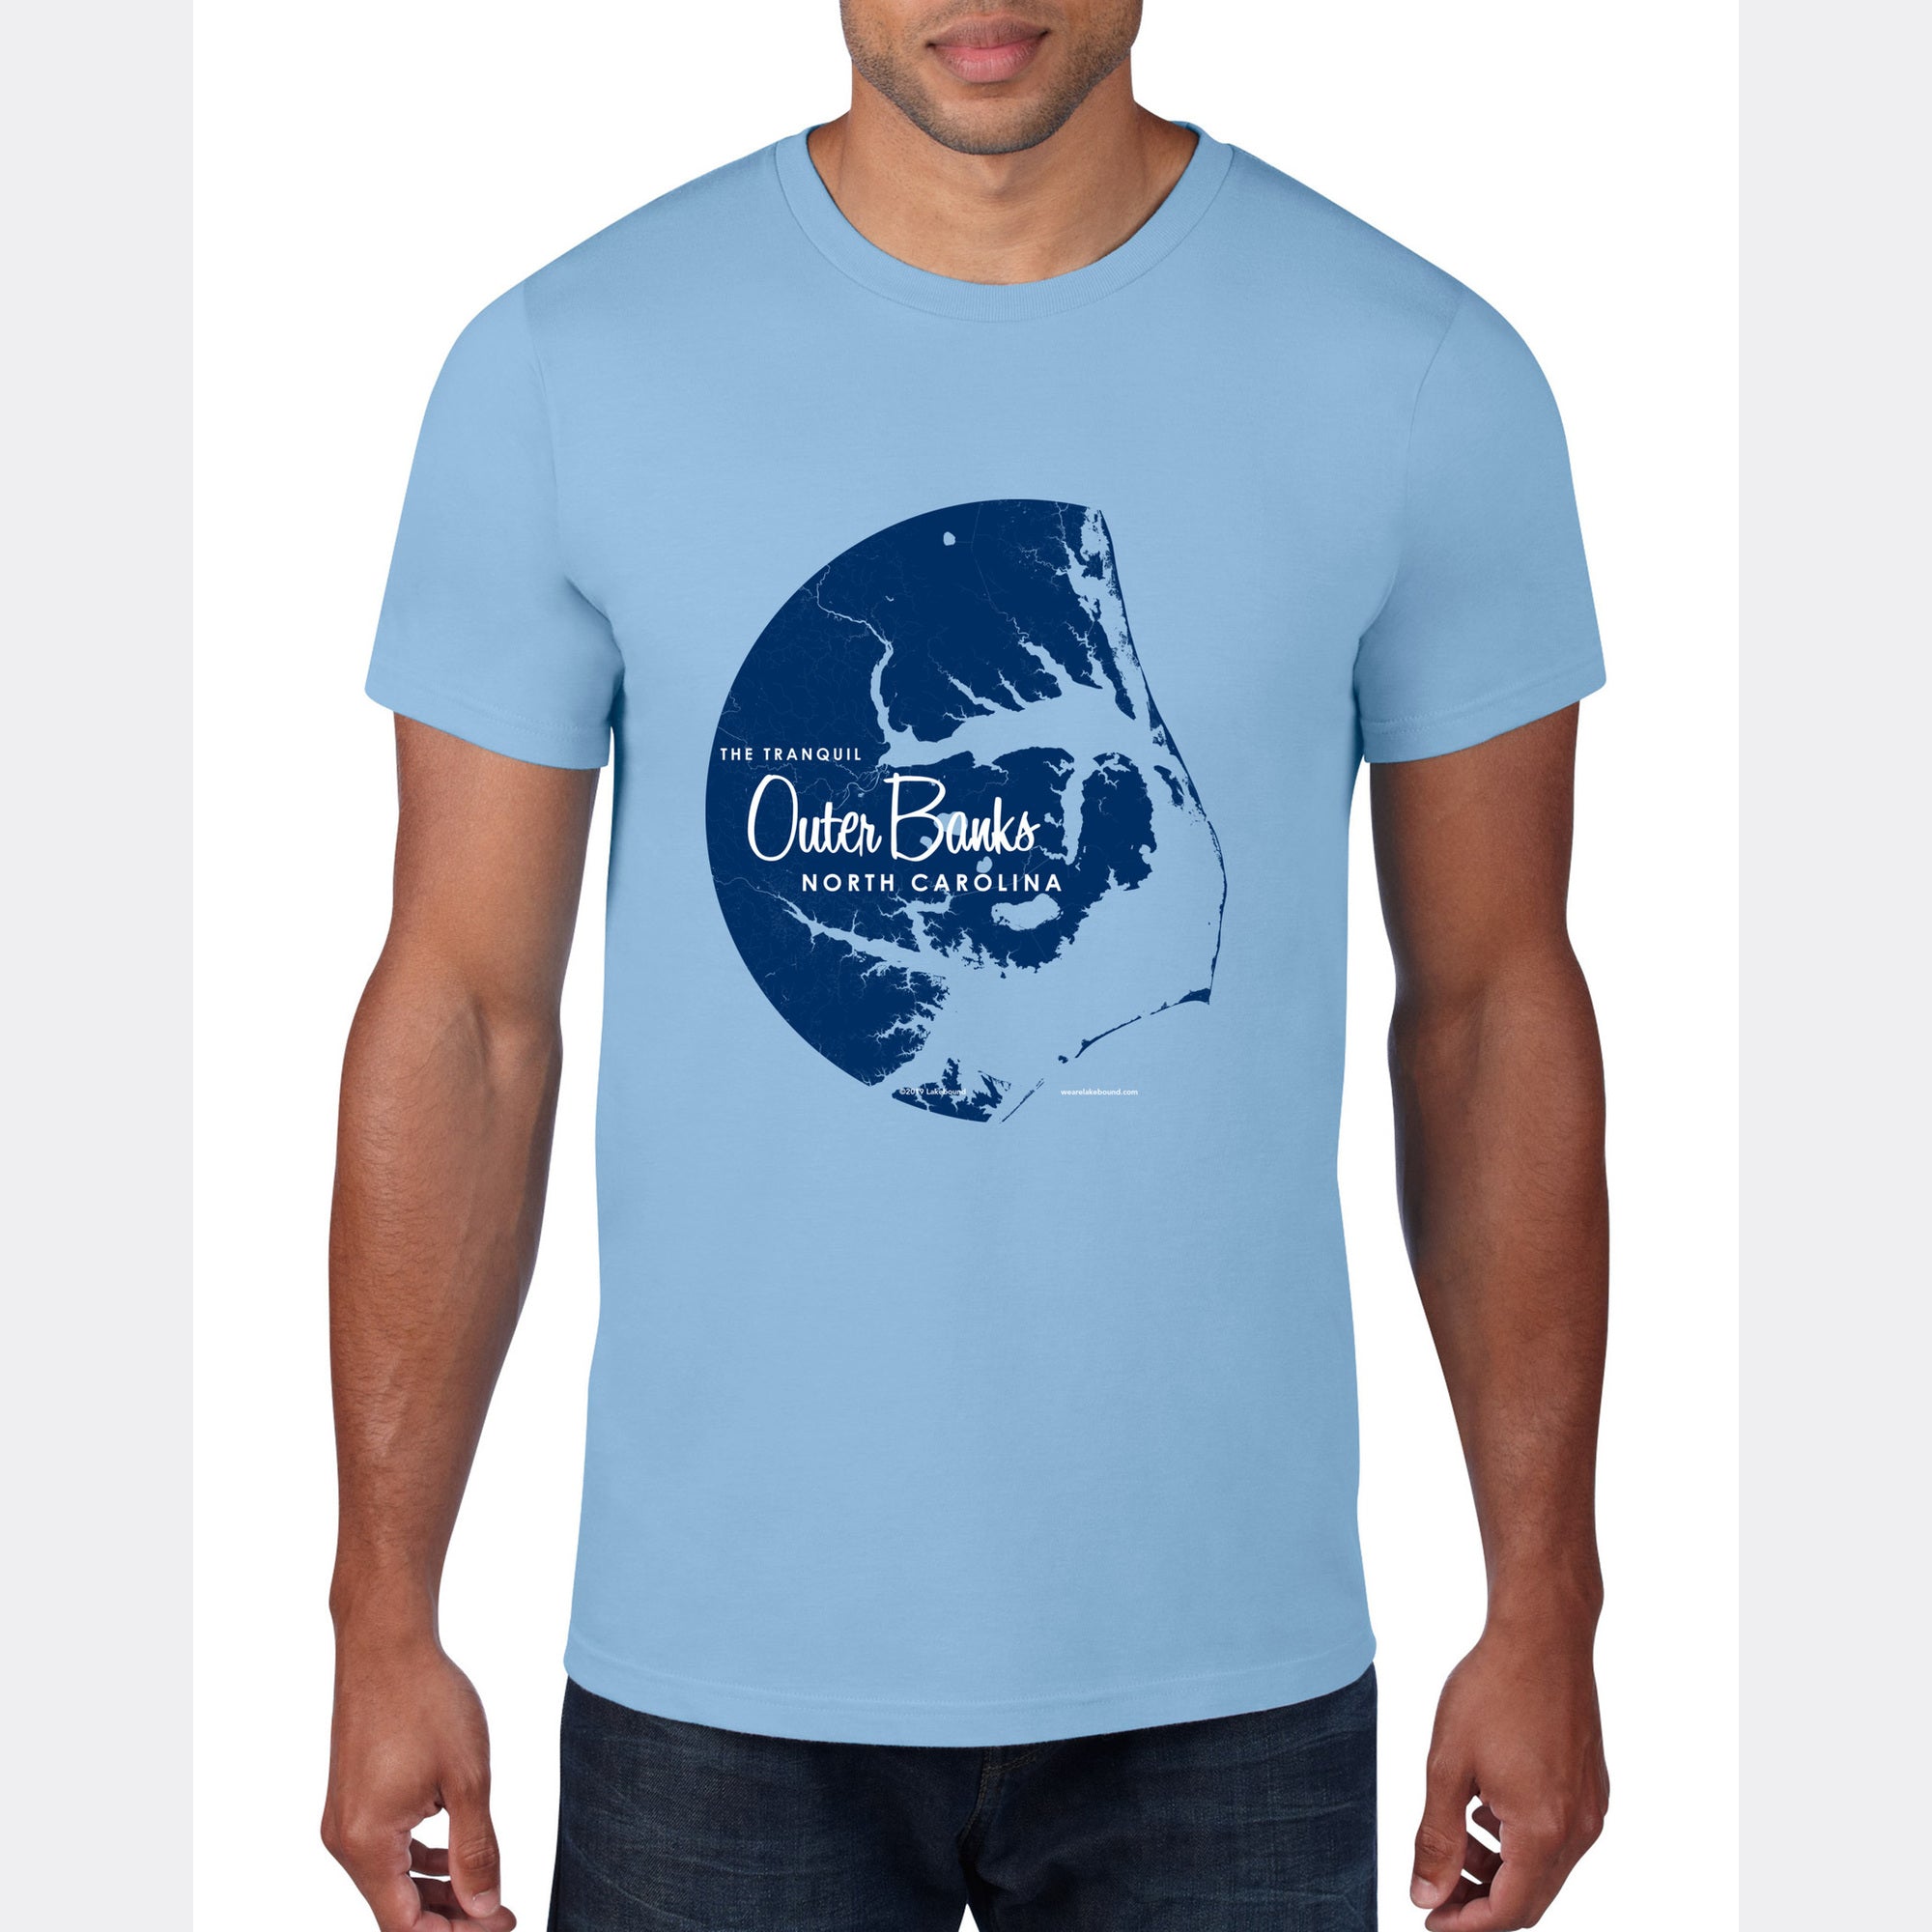 Outer Banks North Carolina, T-Shirt